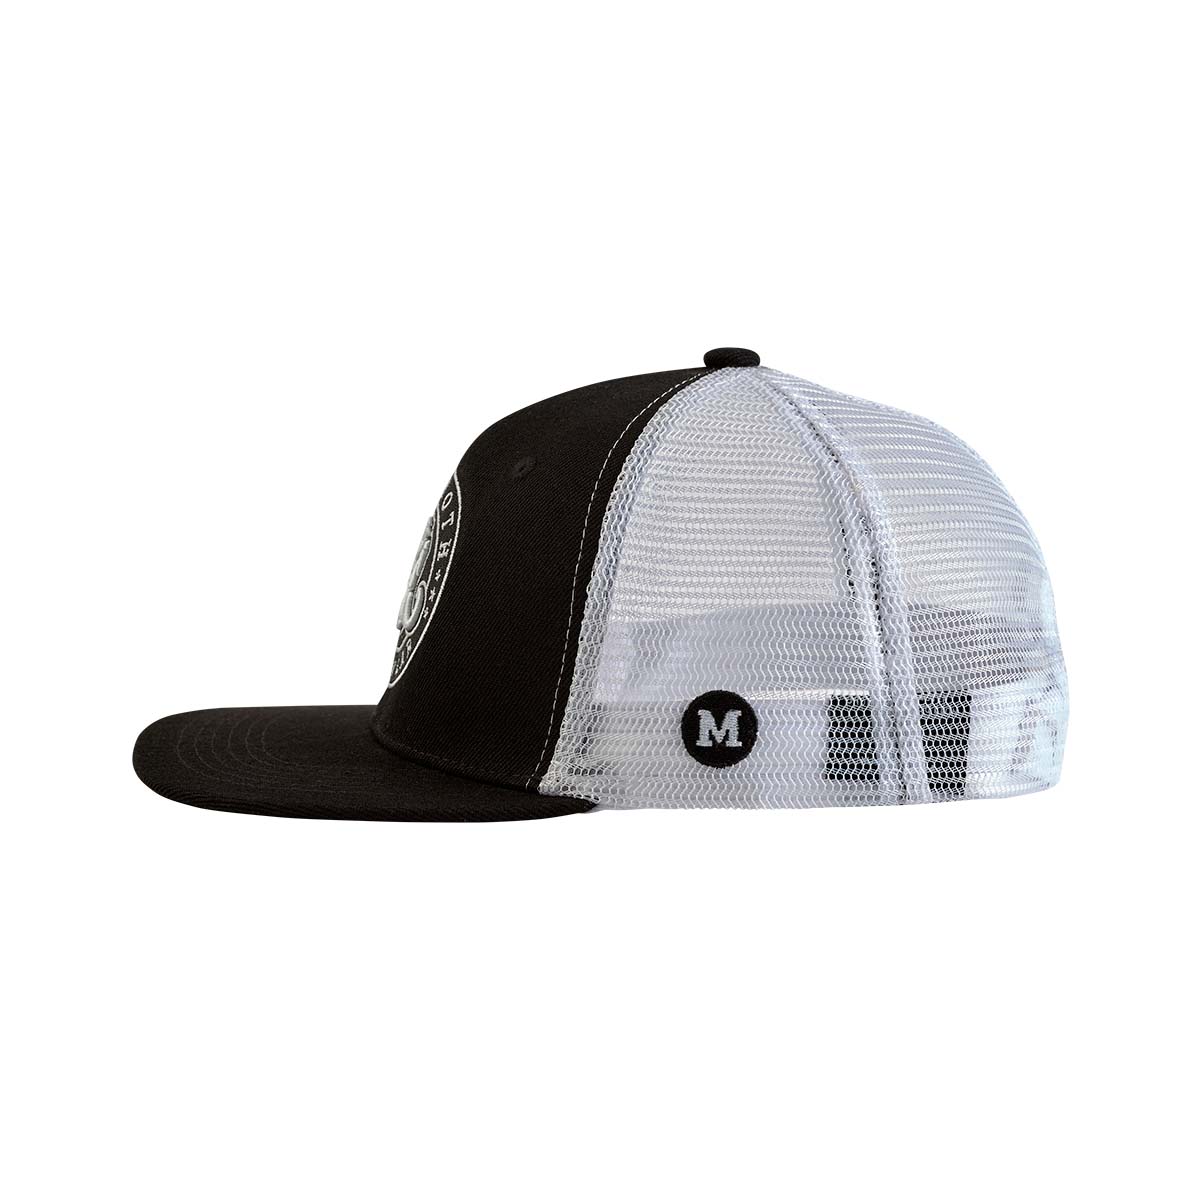 XXL Panda Classic Trucker Hat - The Perfect Fit